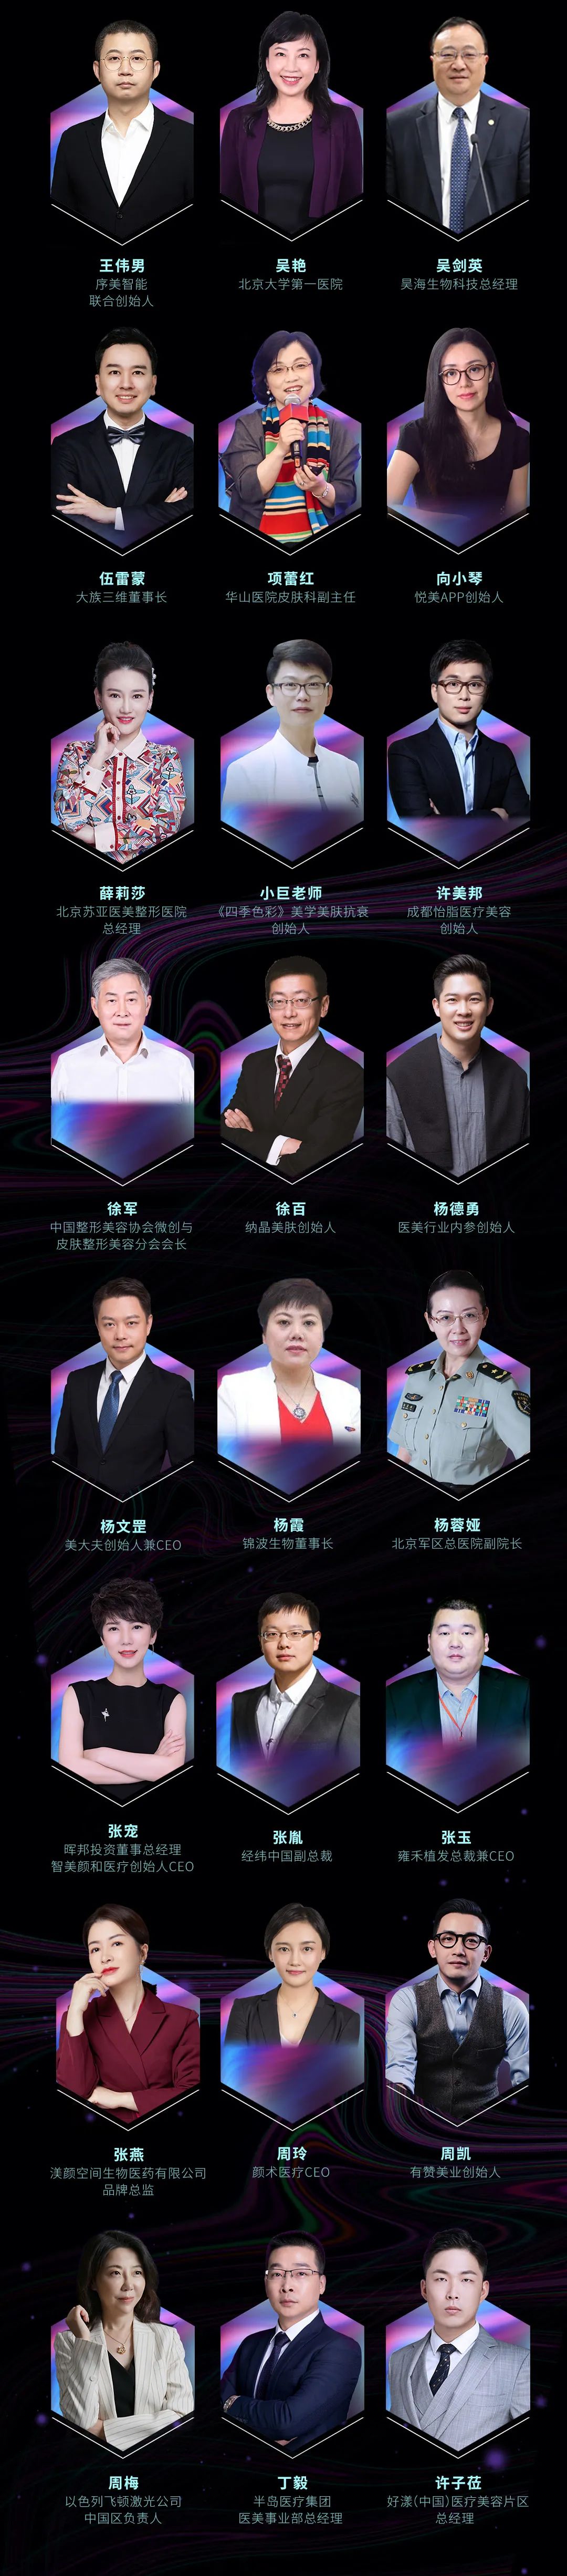 2021全球医美消费者星尚大会4月21日上海启幕3.jpeg